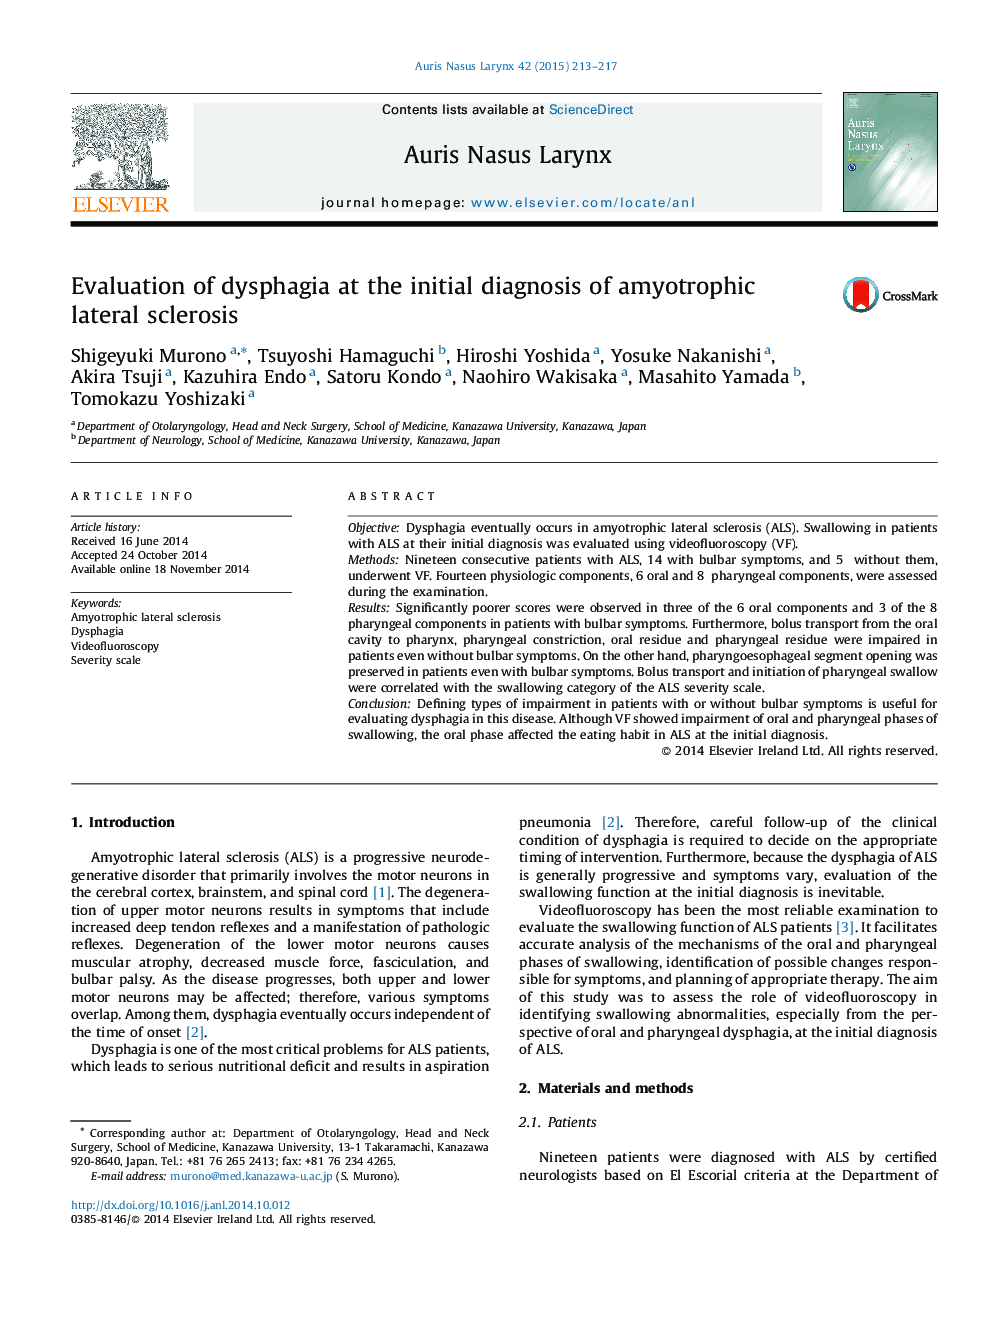 بررسی دیسفاژی در تشخیص اولیه اسکلروز جانبی آمیوتروفی 